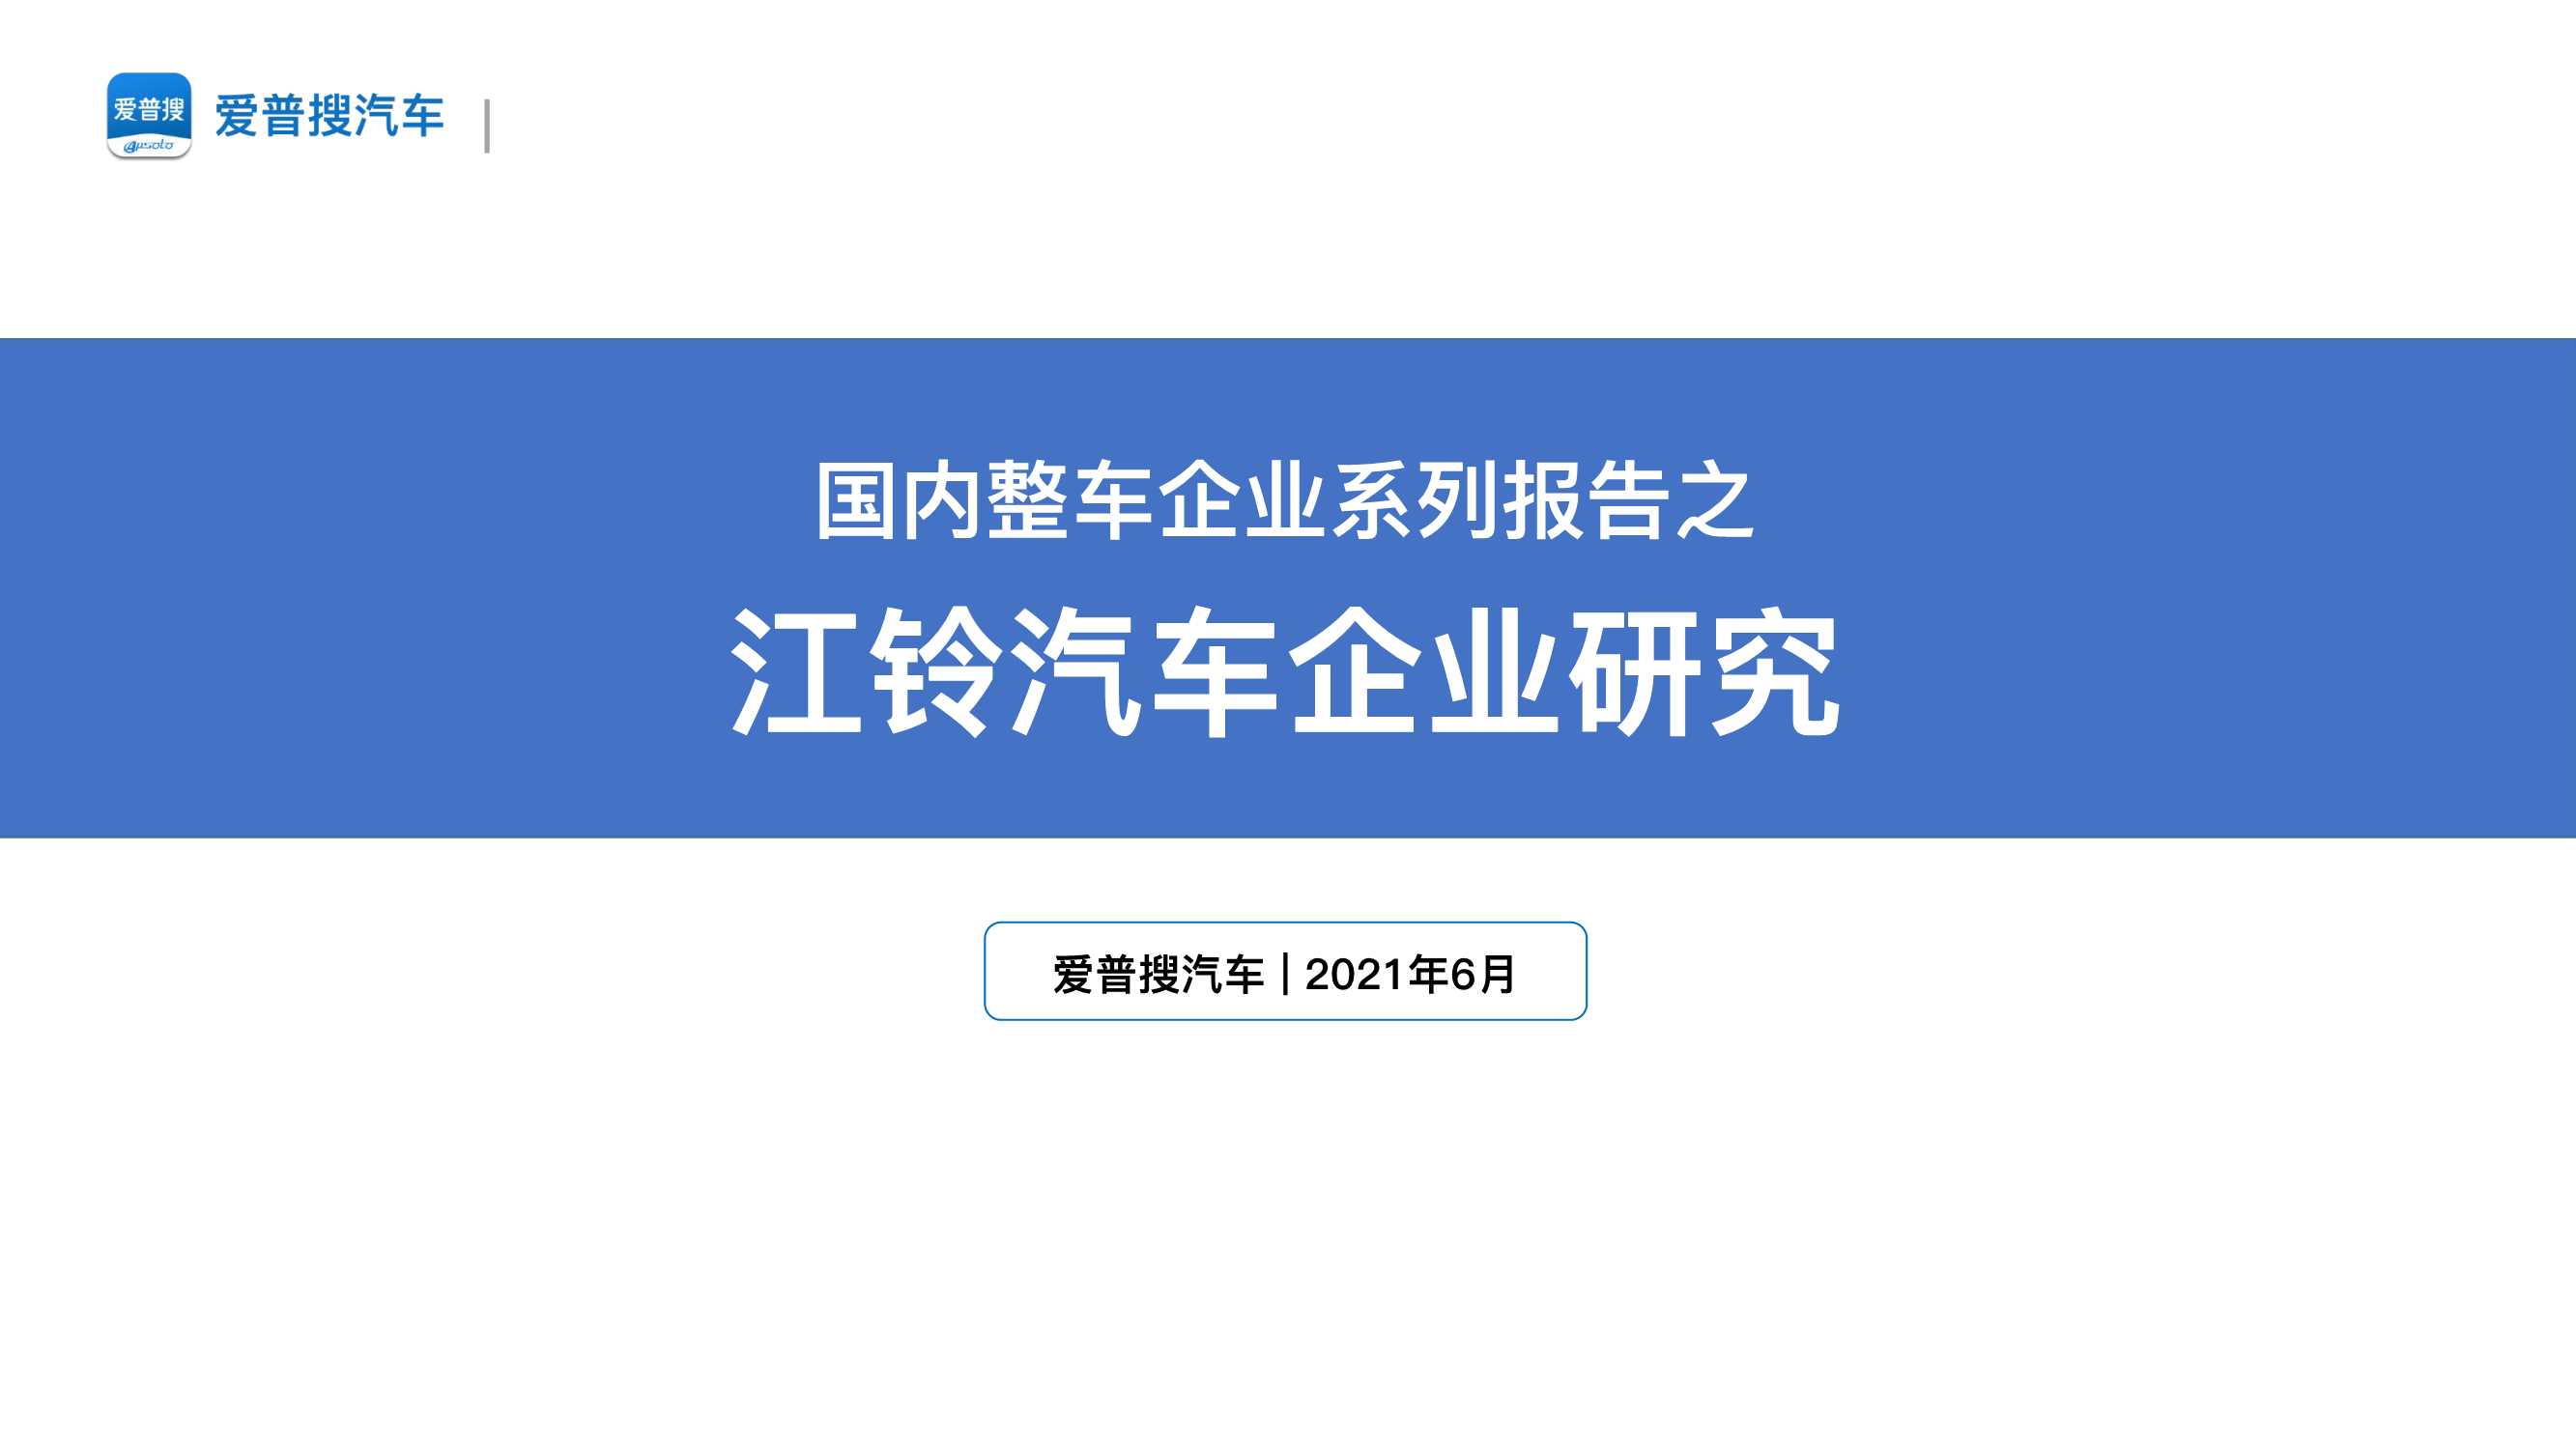 爱普搜汽车-2021江铃汽车企业研究报告-2021.06-24页